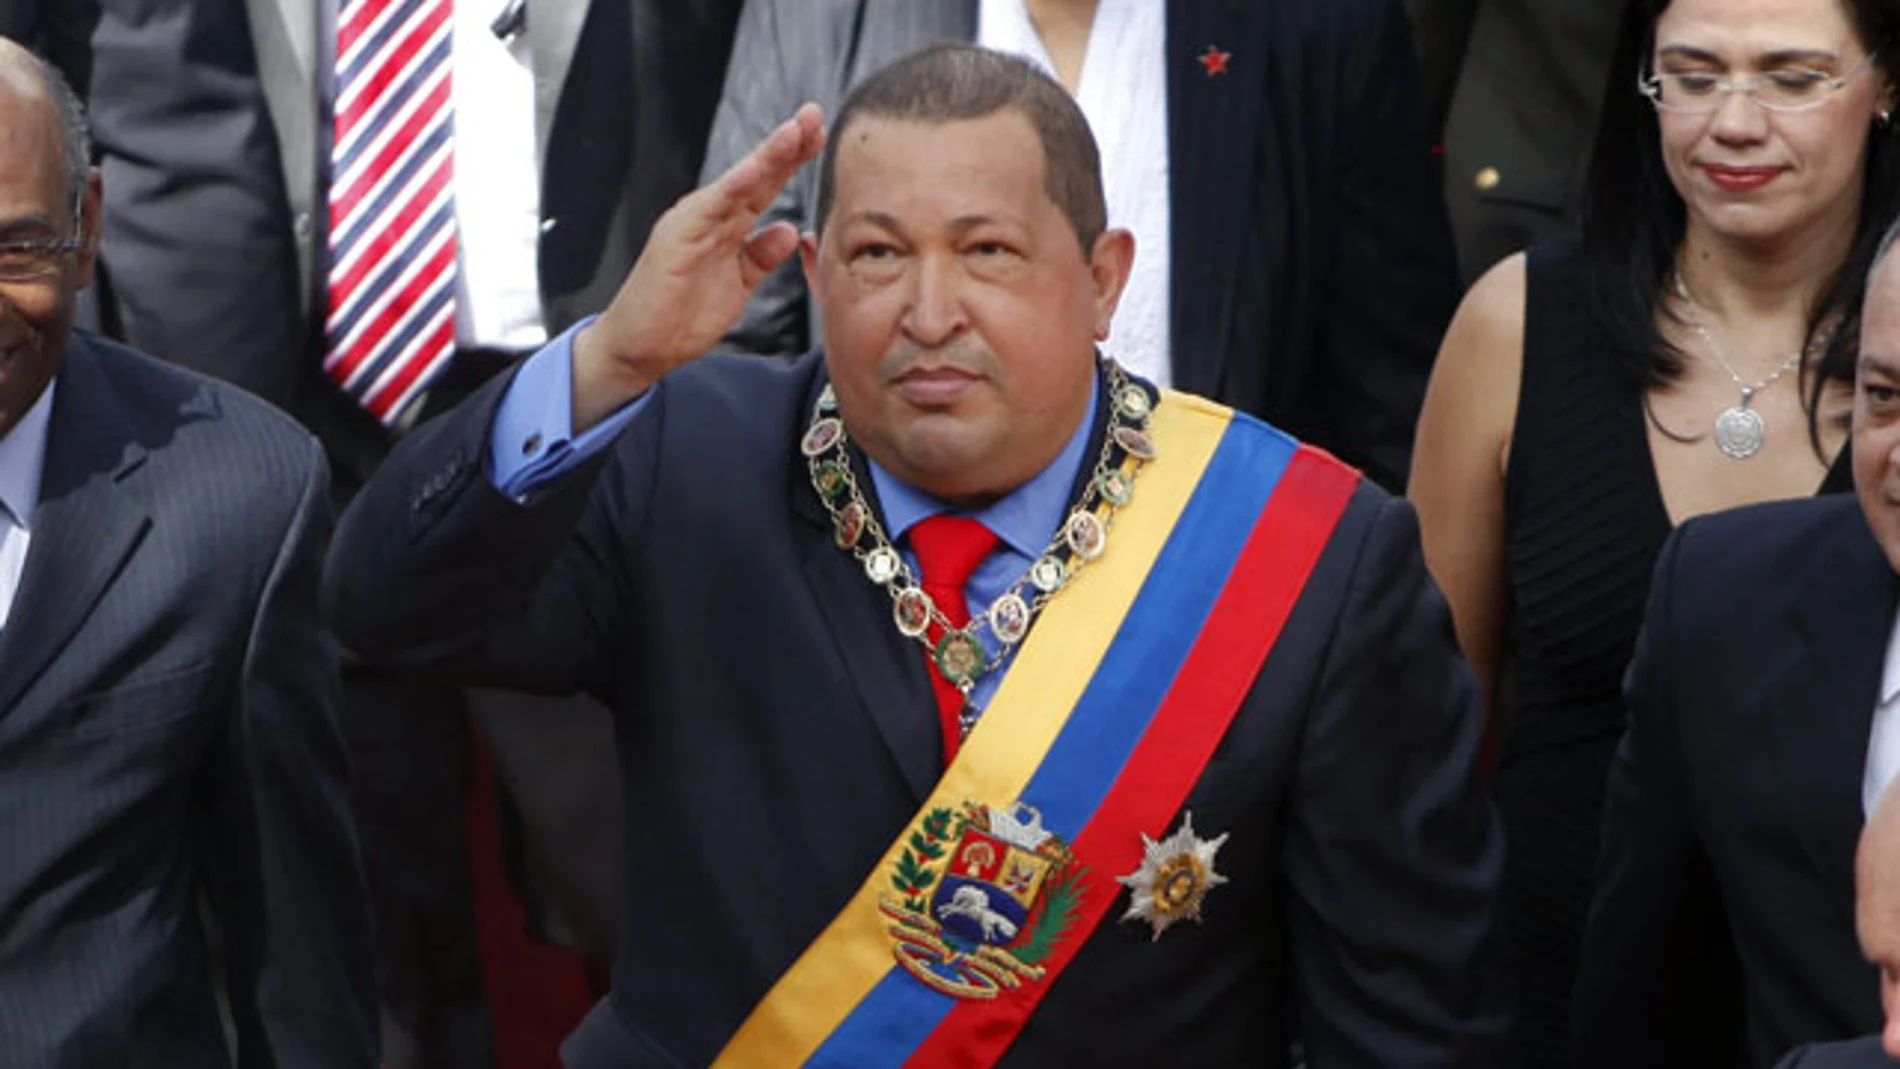 Chávez cree que Obama es una amenaza mundial